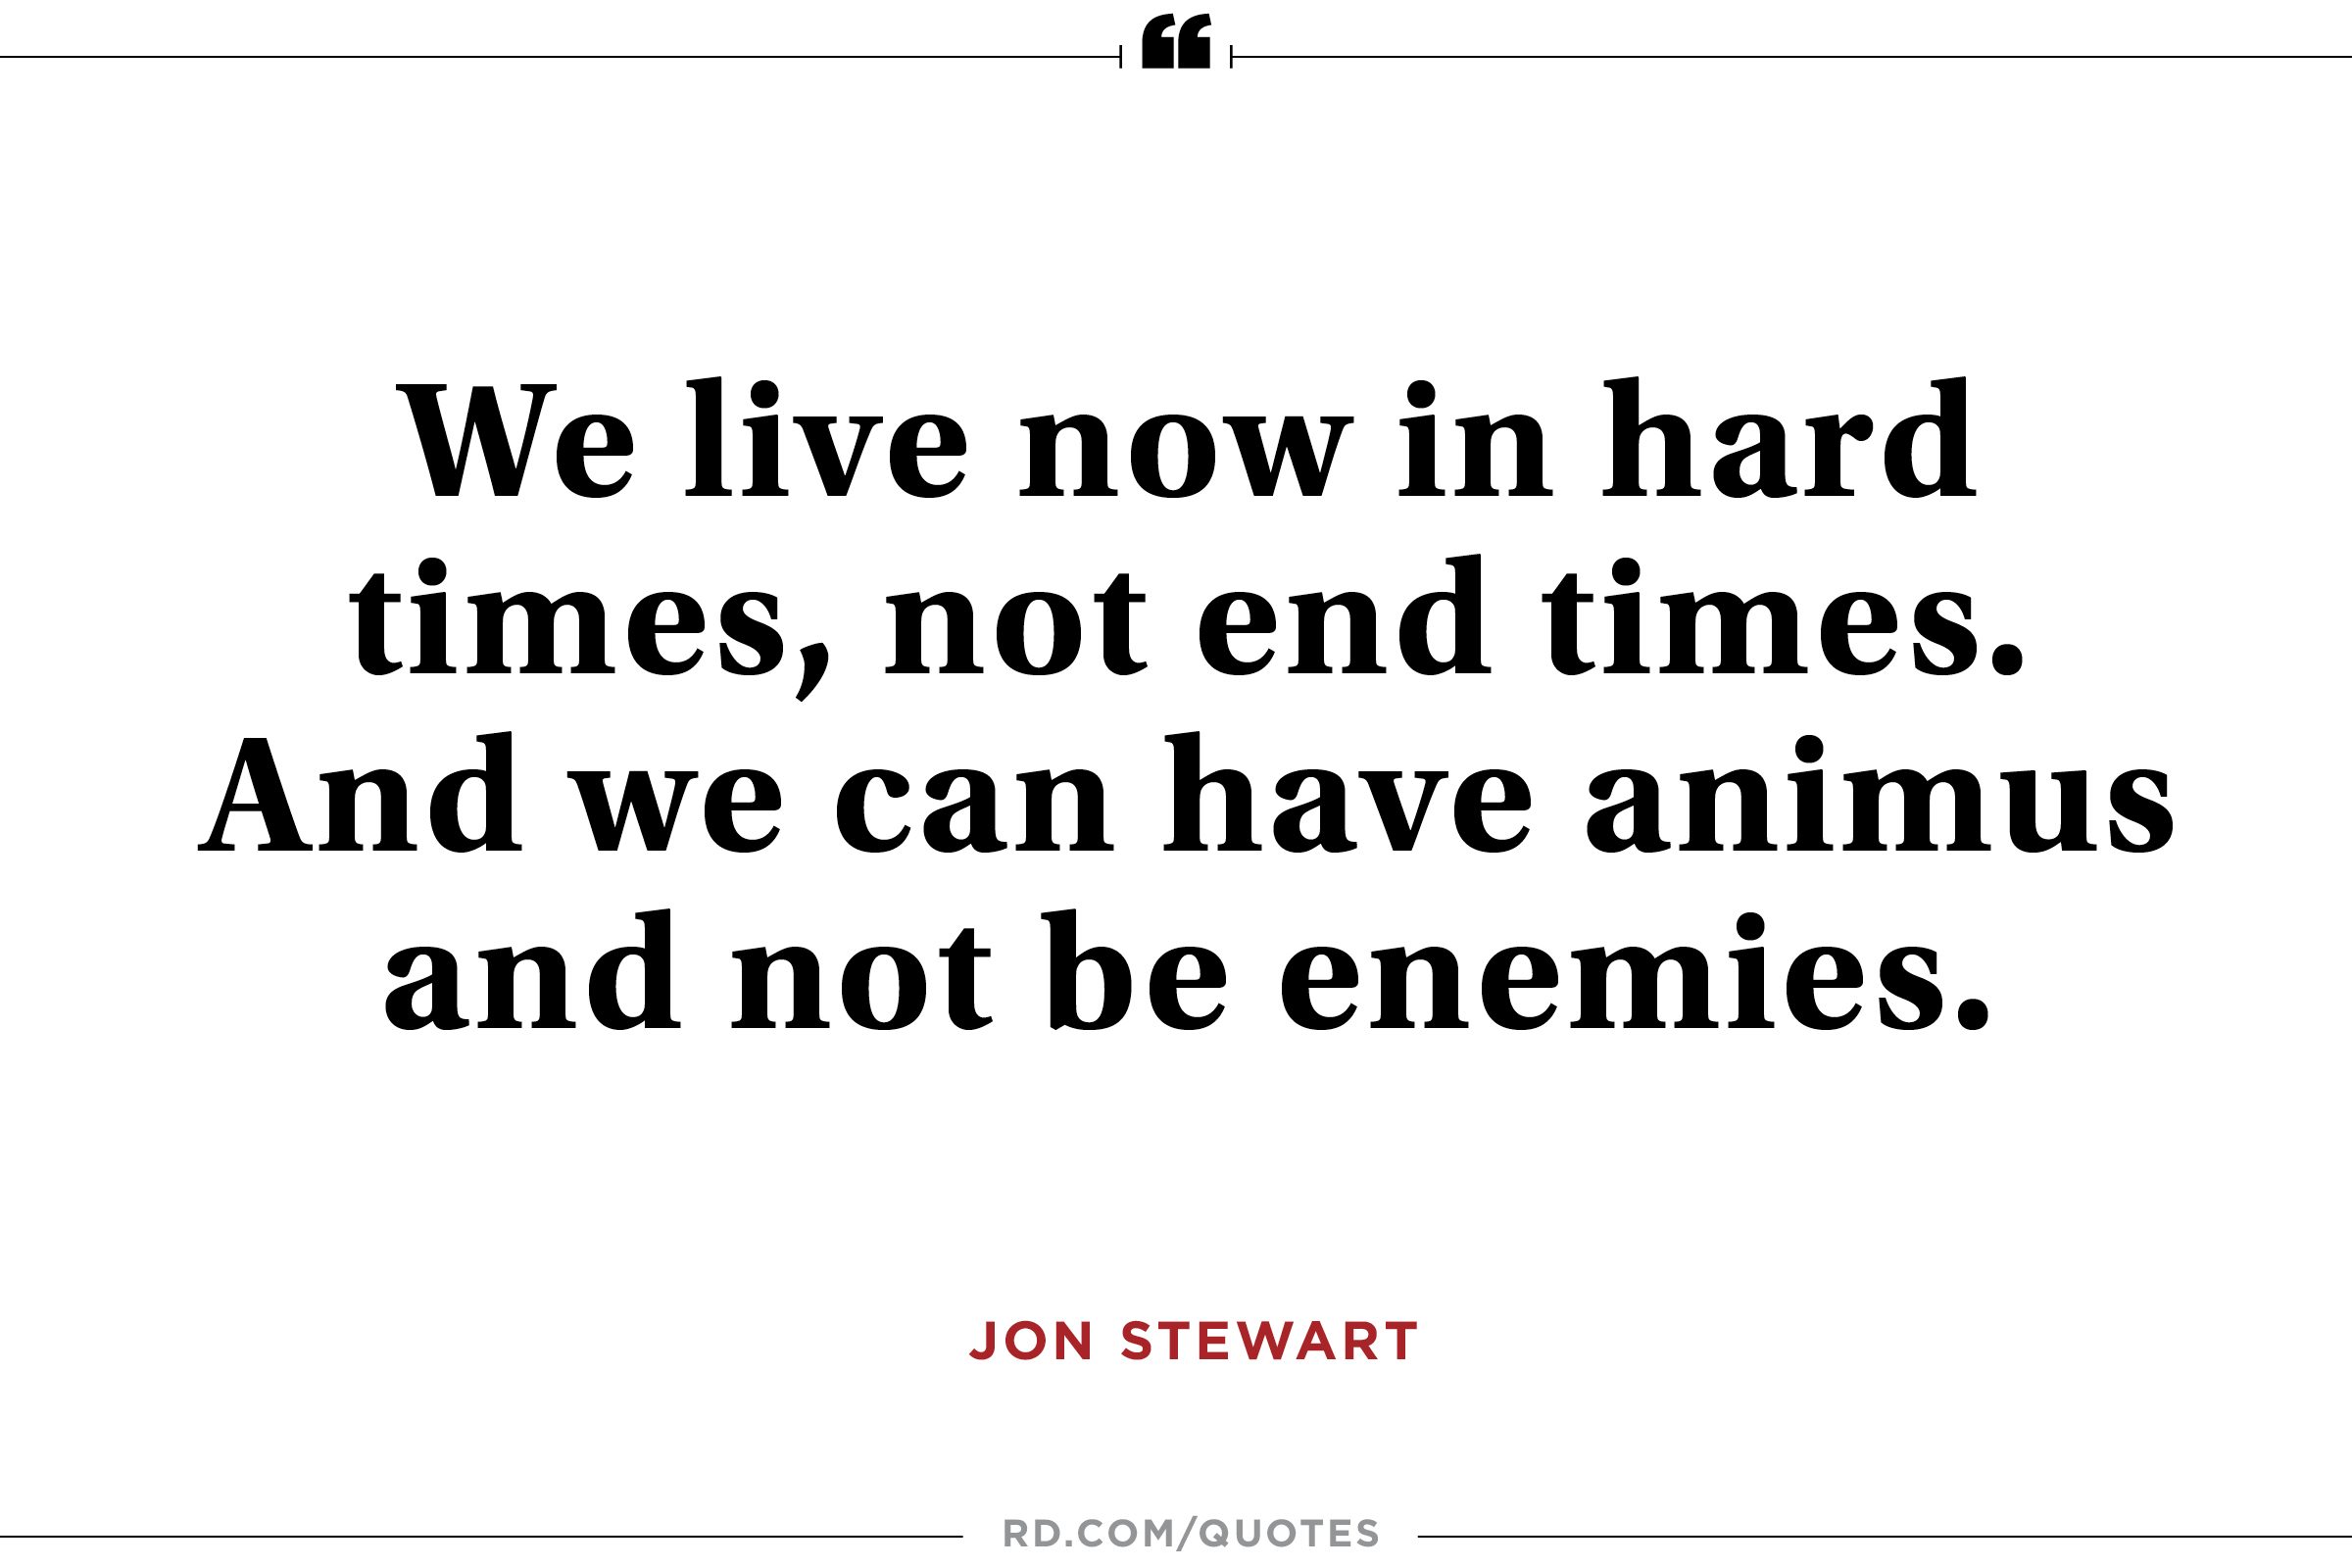 Jon Stewart on Hope